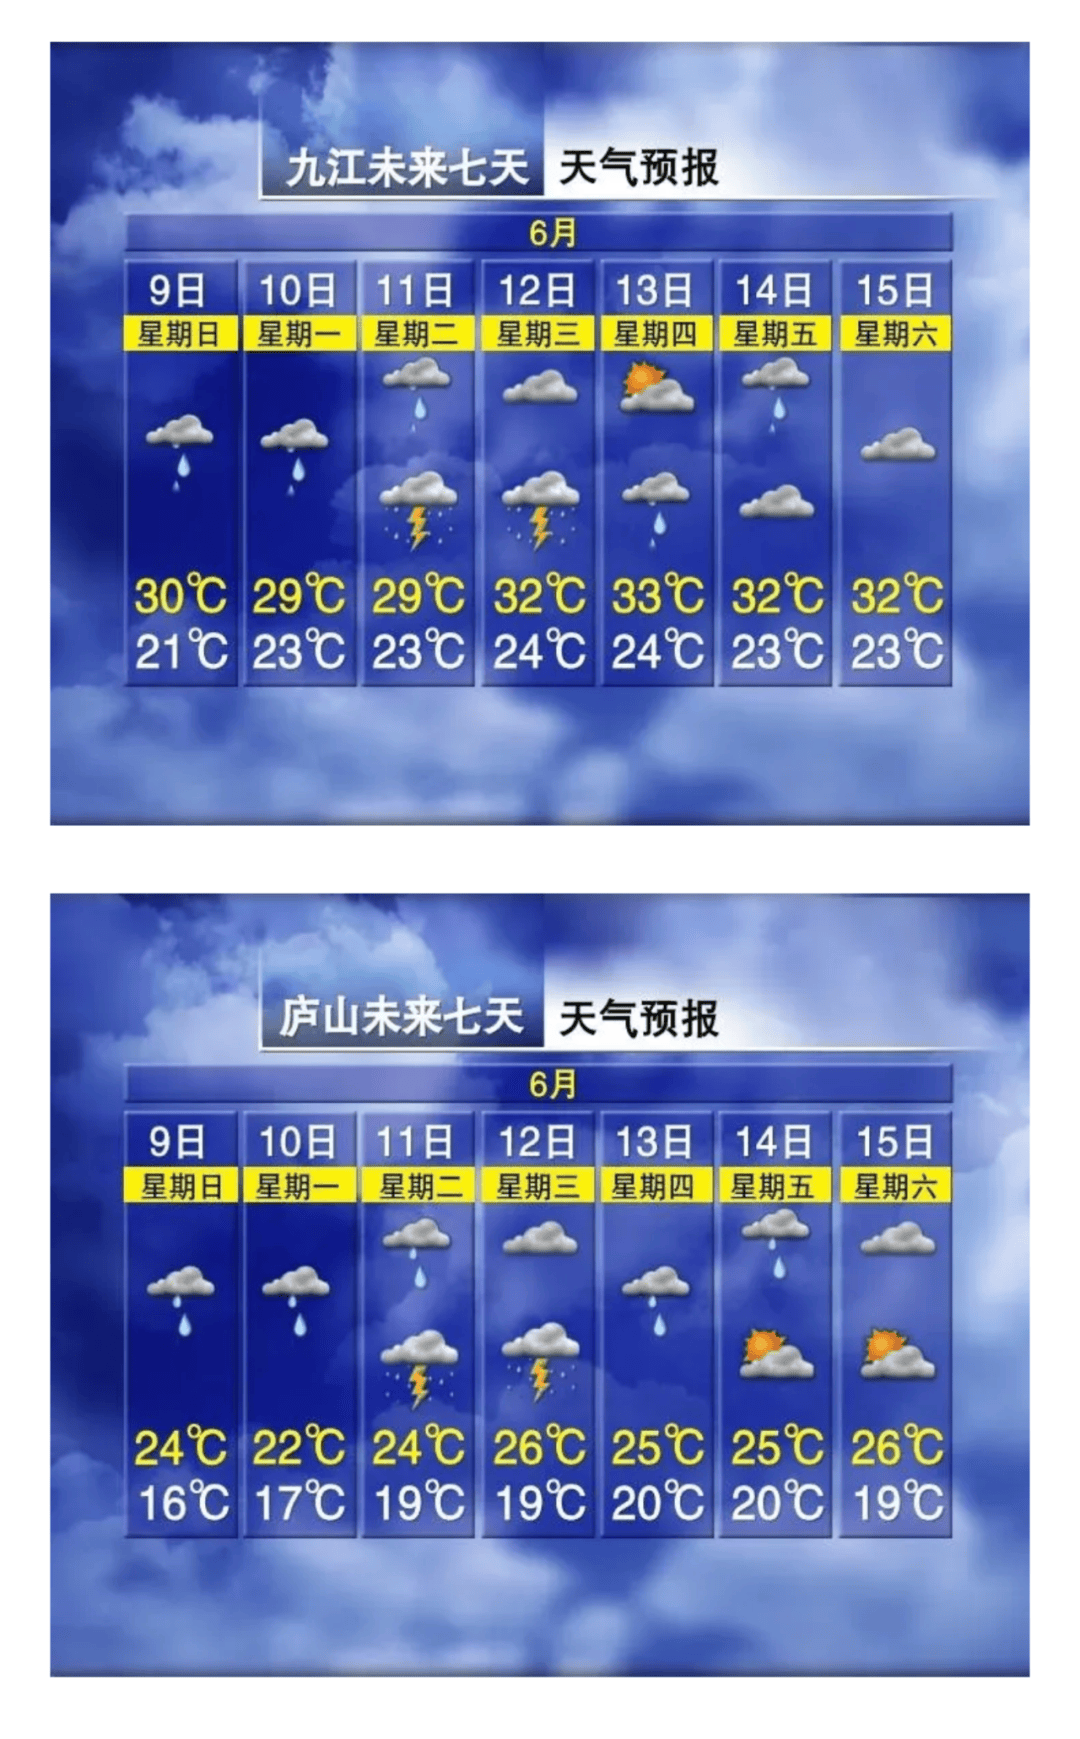 九江降雨时间表来了